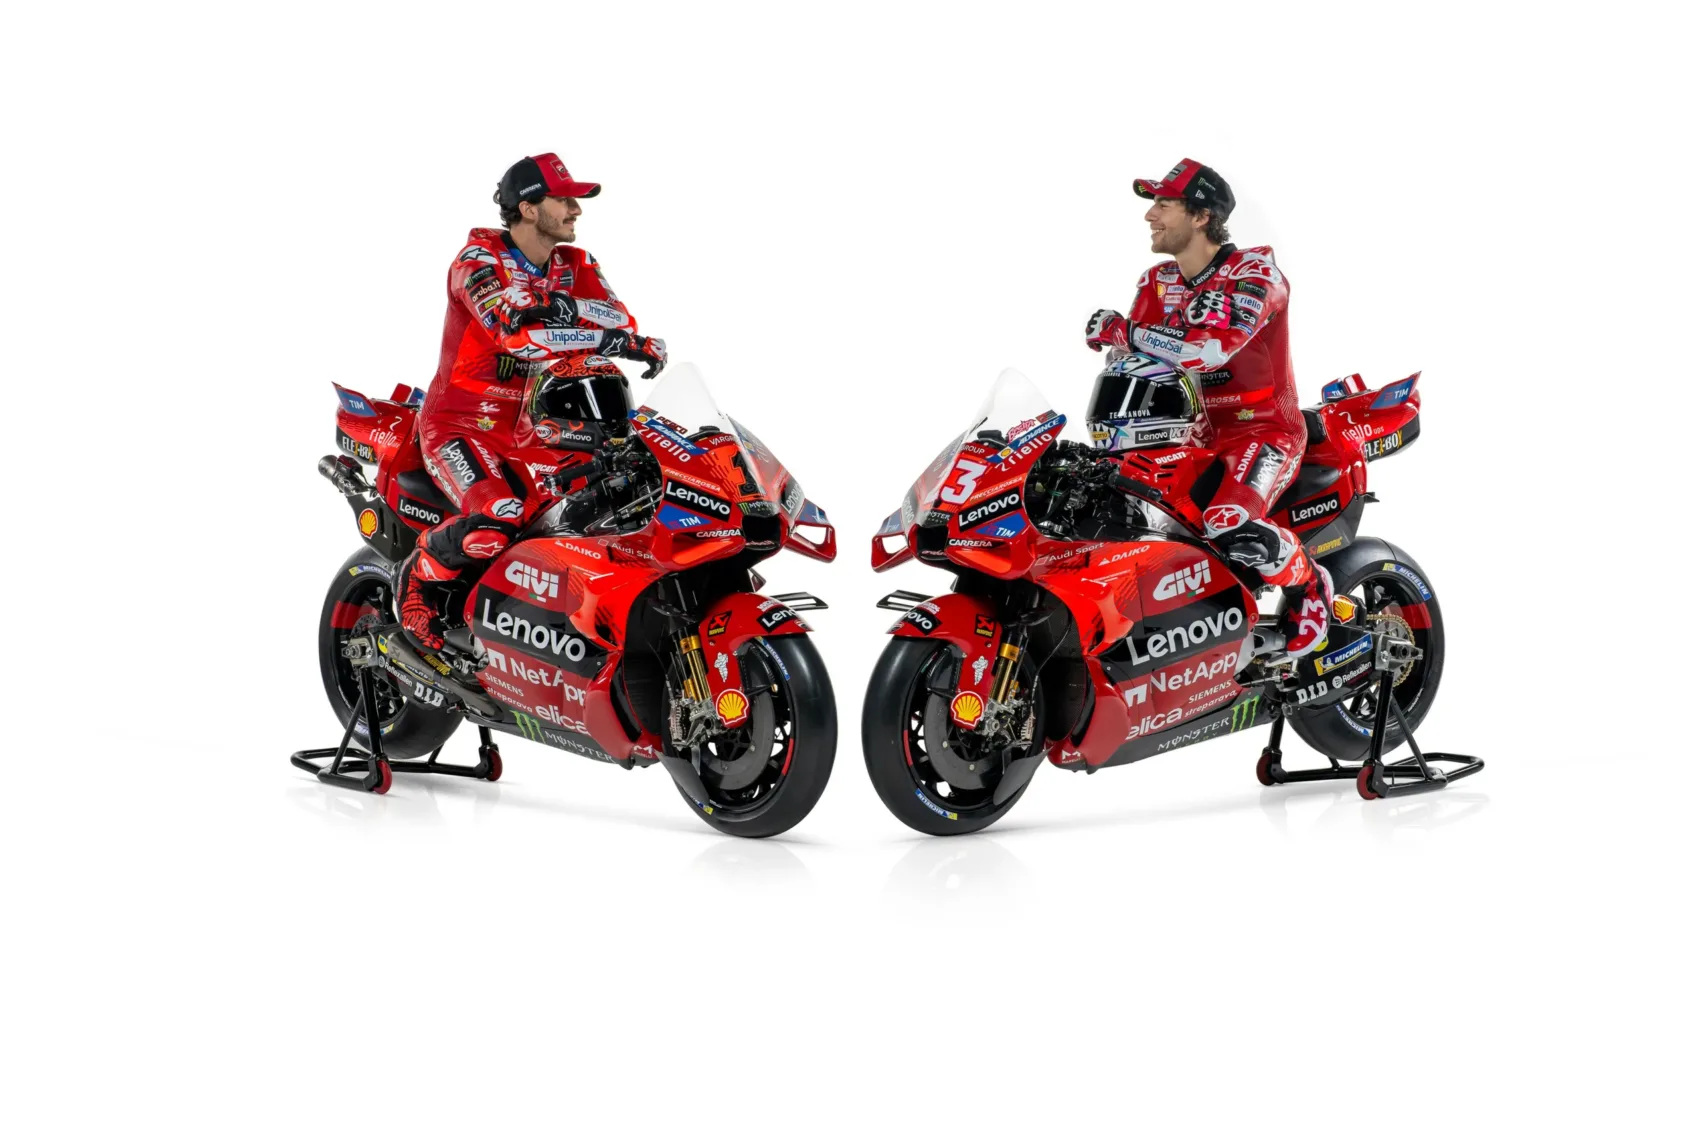 A Ducatinál Bagnaia élvez prioritást Bastianinivel szemben” – Áthelyezés a csapatban: melyik versenyzőre szavaz a Ducati?